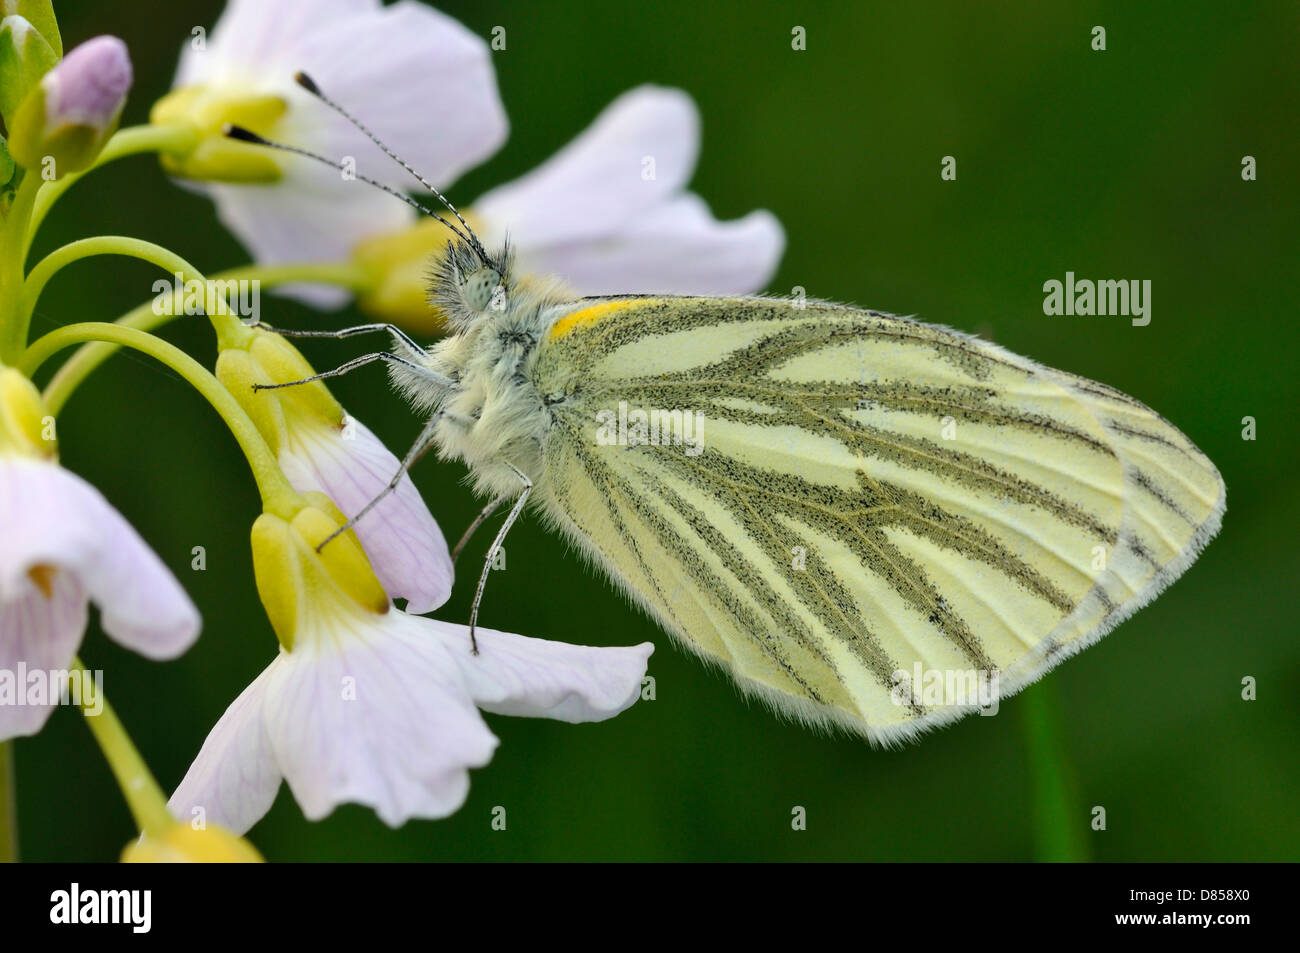 Grün-veined weiß Schmetterling - Pieris Napi Unterseite, ruht auf Kuckuck Blume oder Lady's Smock - Cardamine pratensis Stockfoto